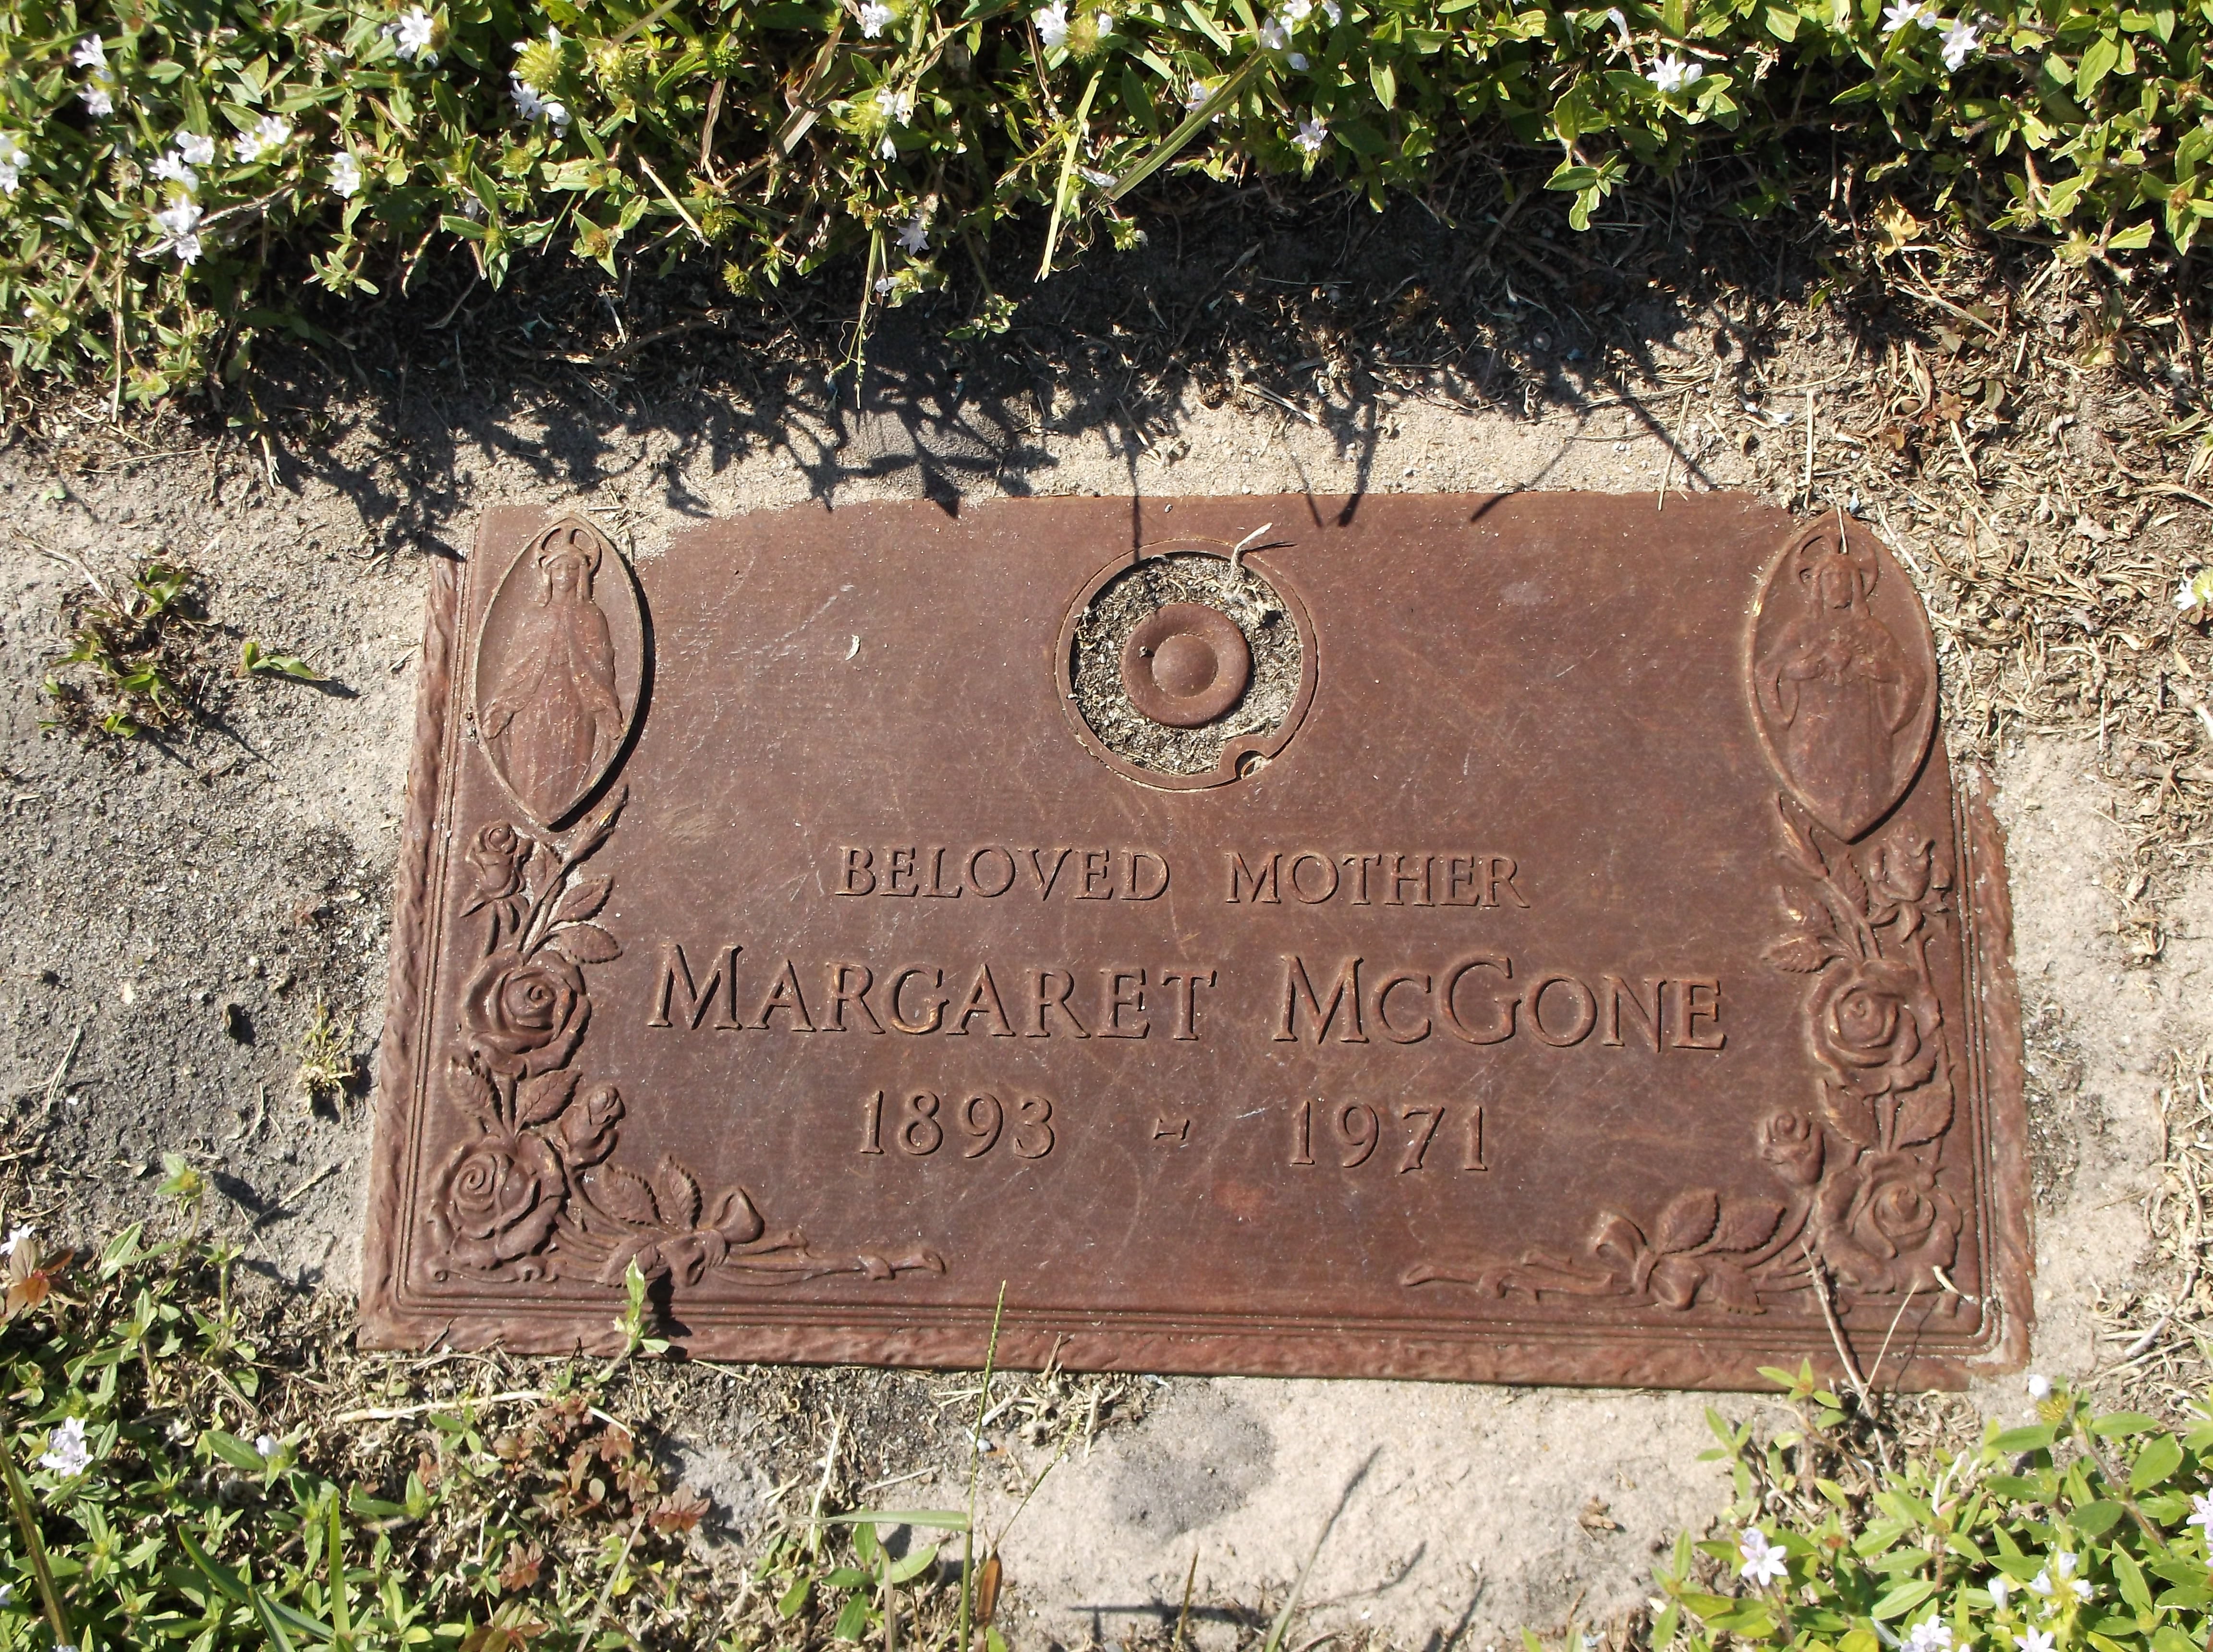 Margaret McGone